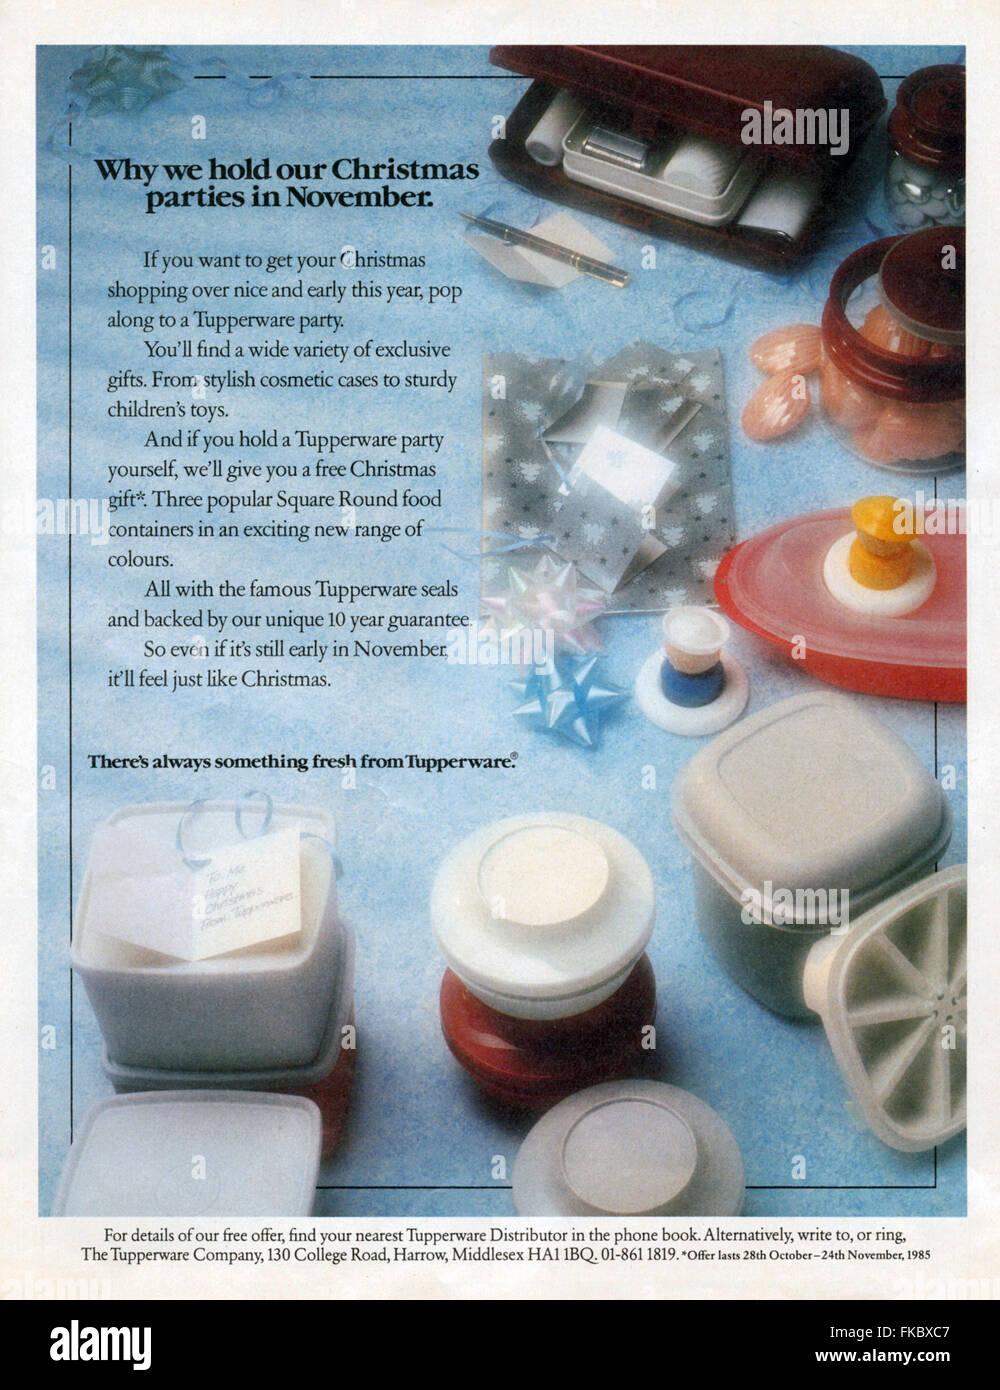 1970s UK Tupperware Magazine Advert Stock Photo - Alamy